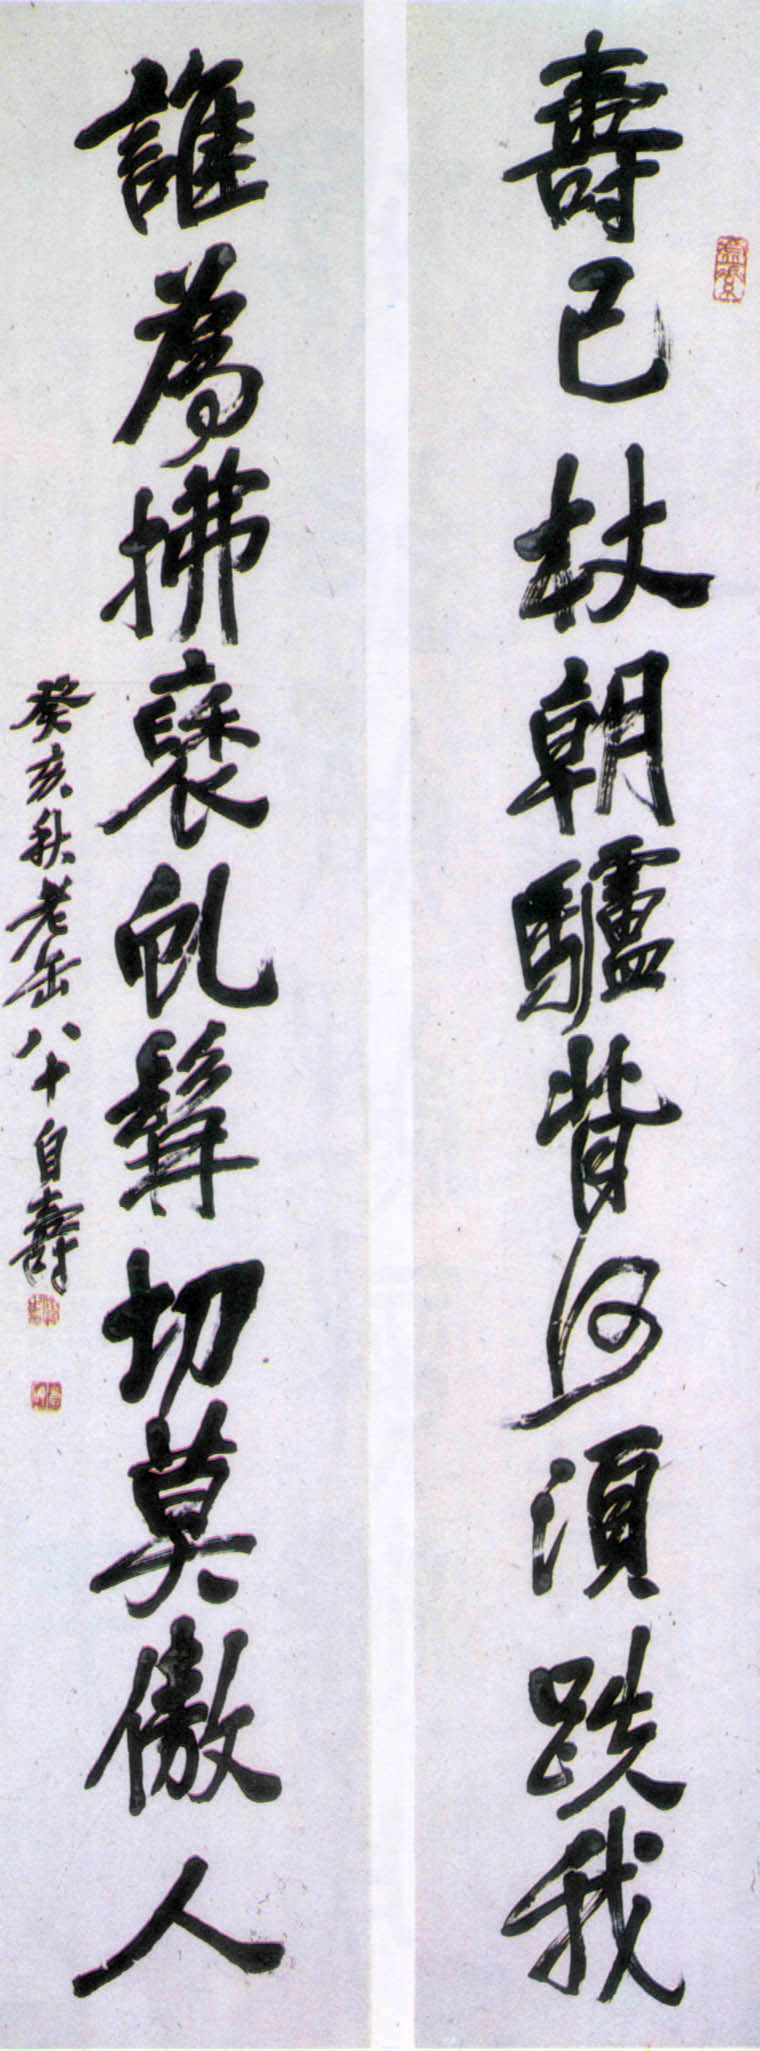 吴昌硕《行书八十自寿联》(图1)